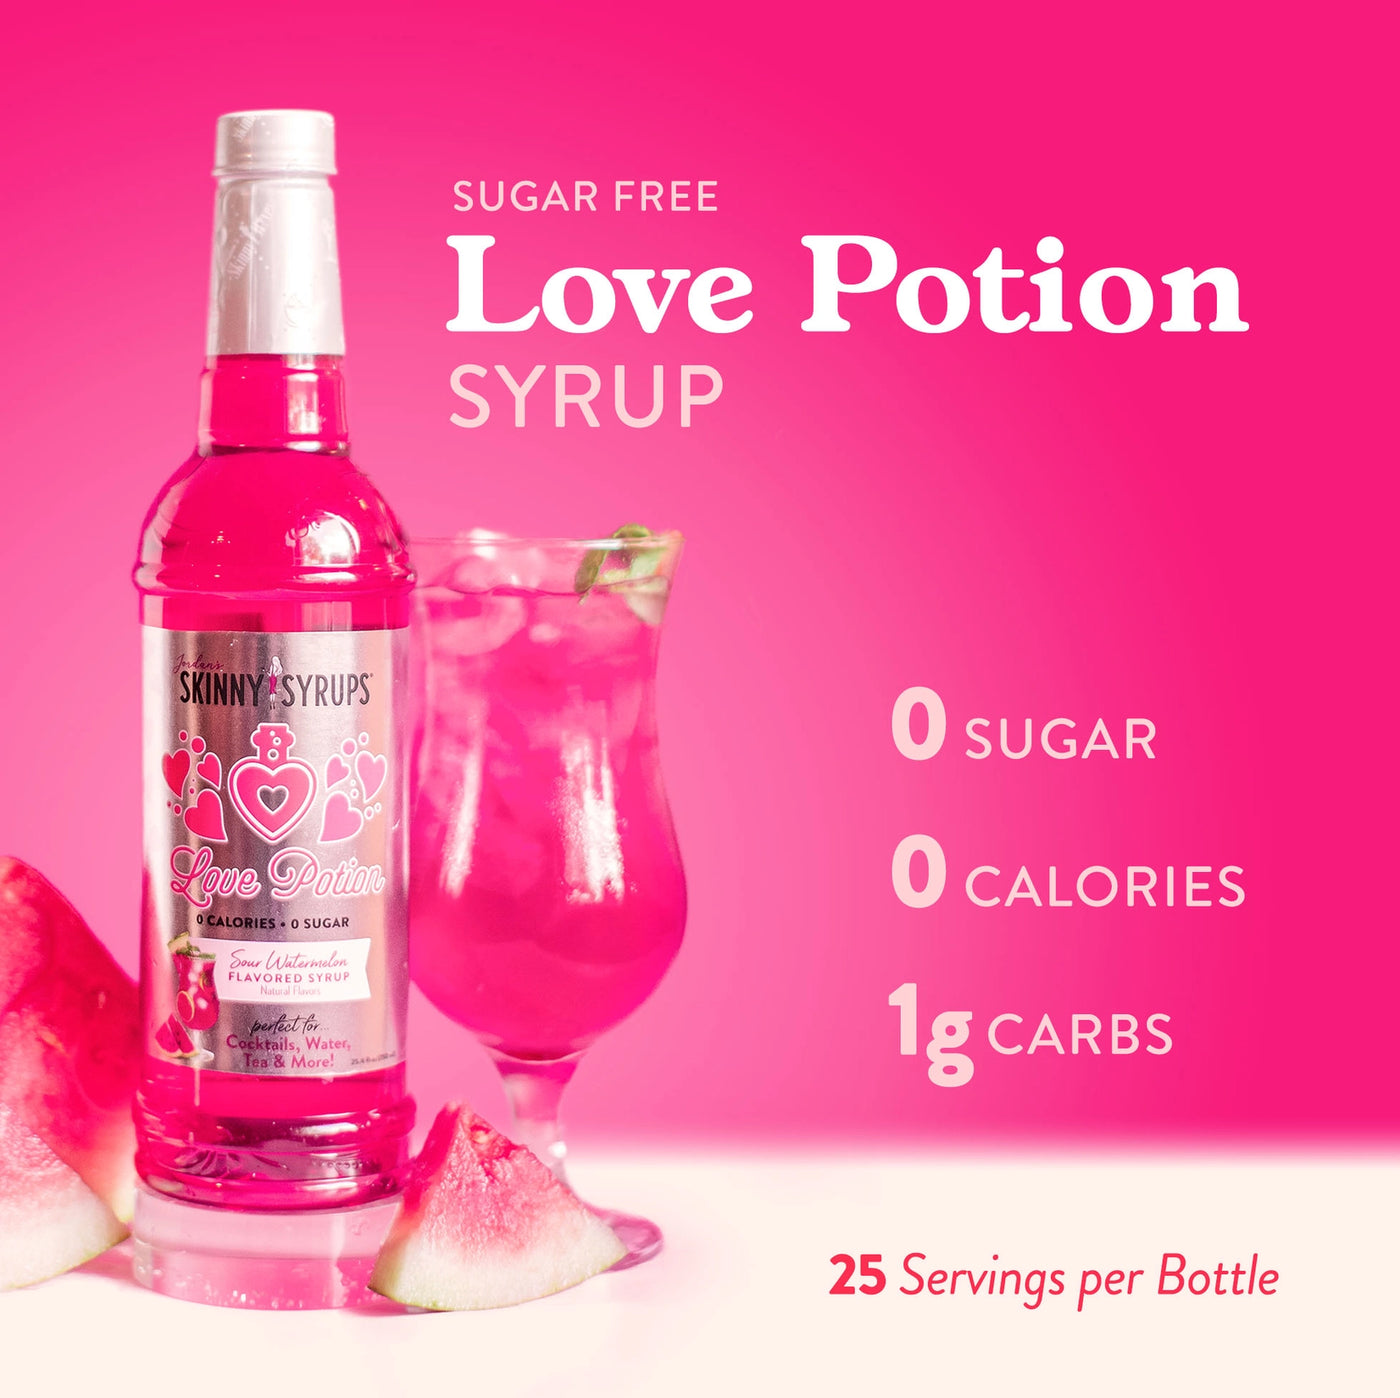 Love Potion Syrup - Jordan's Skinny Mixes - Sugar Free